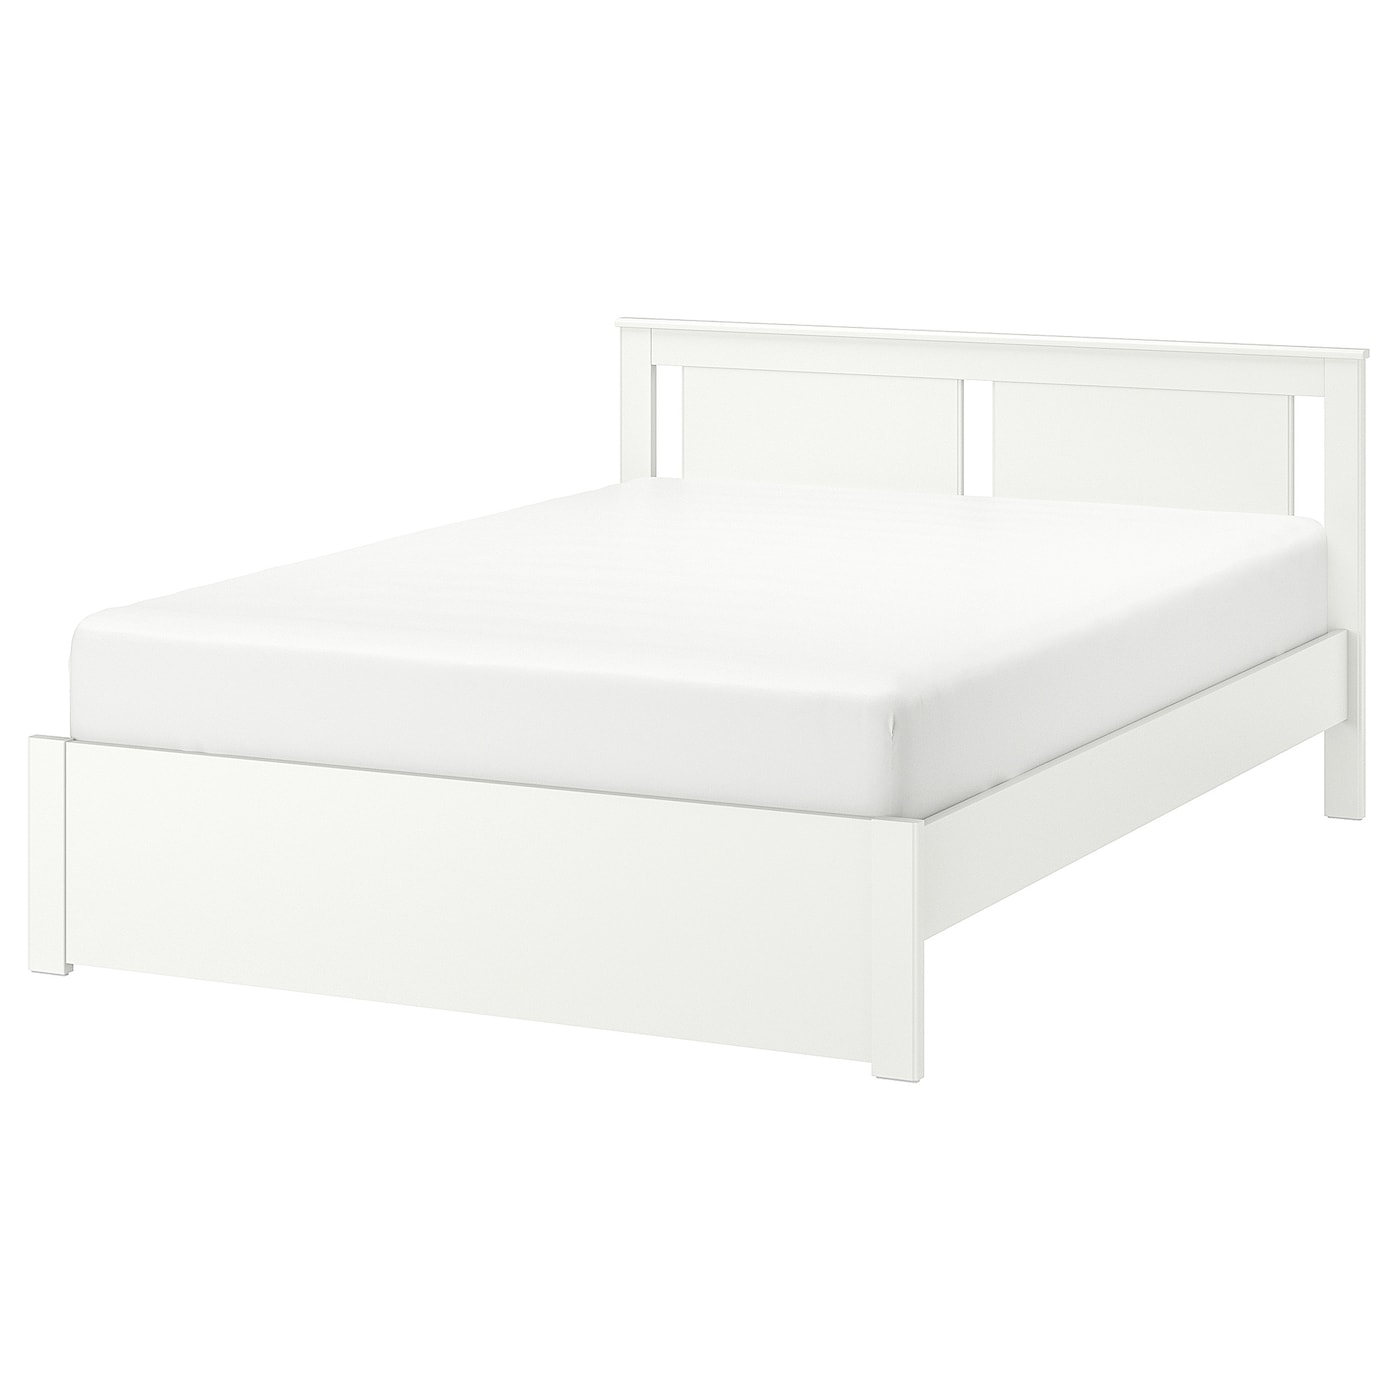 Двуспальная кровать - IKEA SONGESAND/LÖNSET/LONSET, 200х140 см, белый, СОНГЕСАНД/ЛОНСЕТ ИКЕА